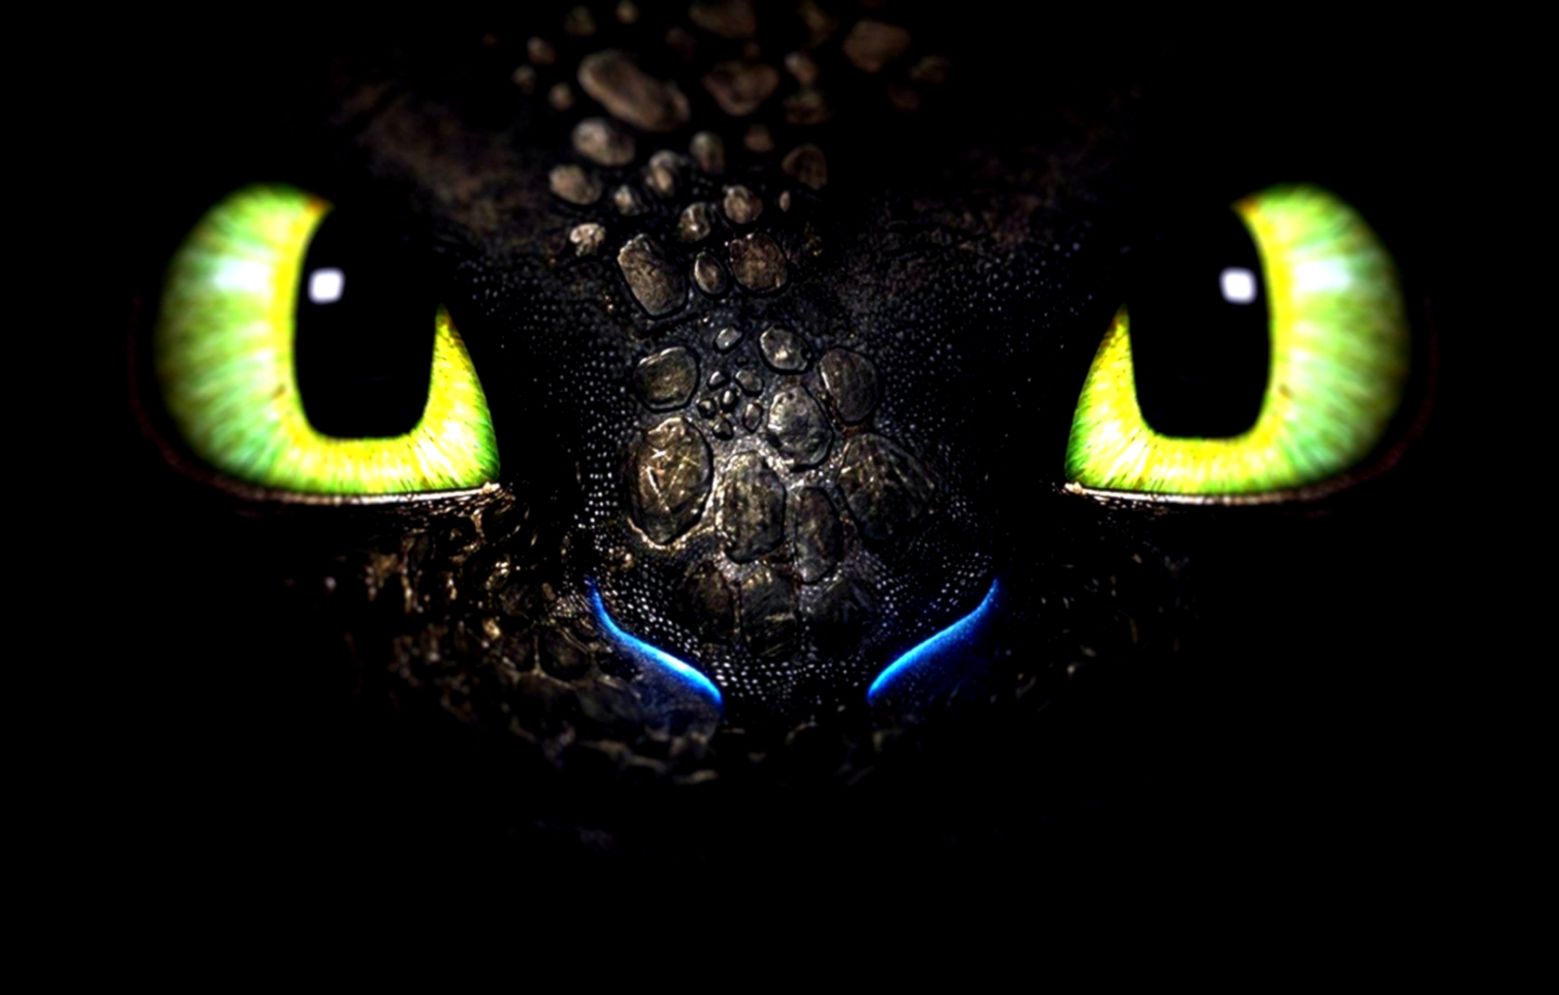 toothless dragon wallpaper,black,green,black cat,light,darkness